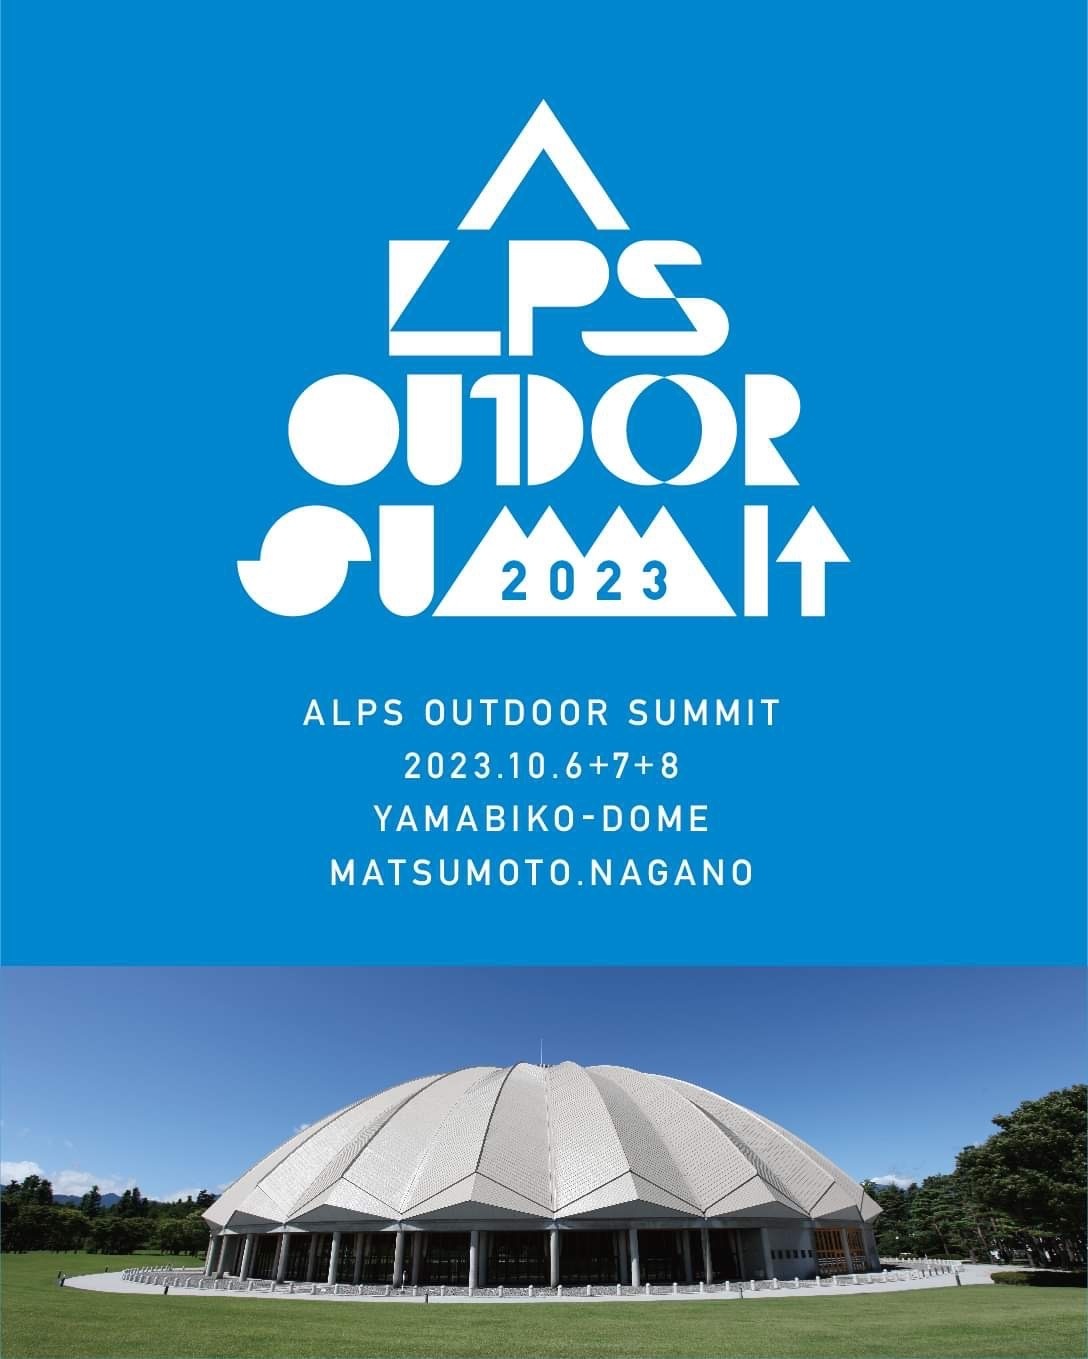 今年初開催の「ALPS OUTDOOR SUMMIT」まで2週間
海外ブランド創立者や井浦新氏によるトークセッションも開催！